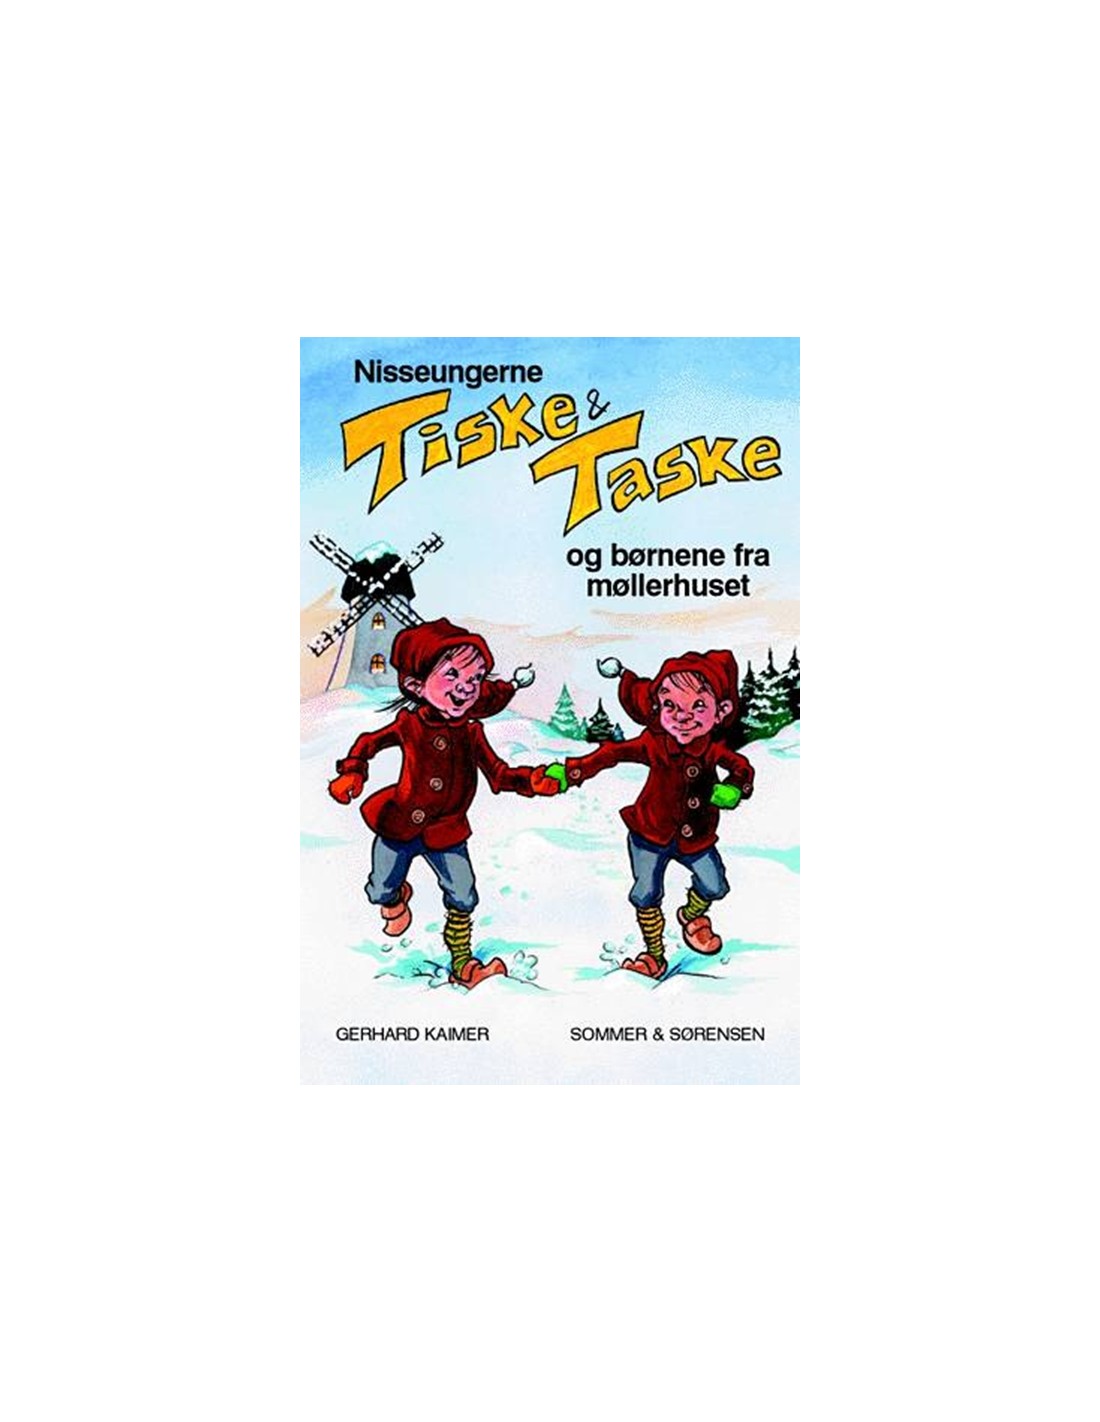 Canada Af Gud Bløde Nisseungerne Tiske og Taske og børnene fra møllerhuset - ISBN 9788790189631  skrevet af Gerhard Kaimer